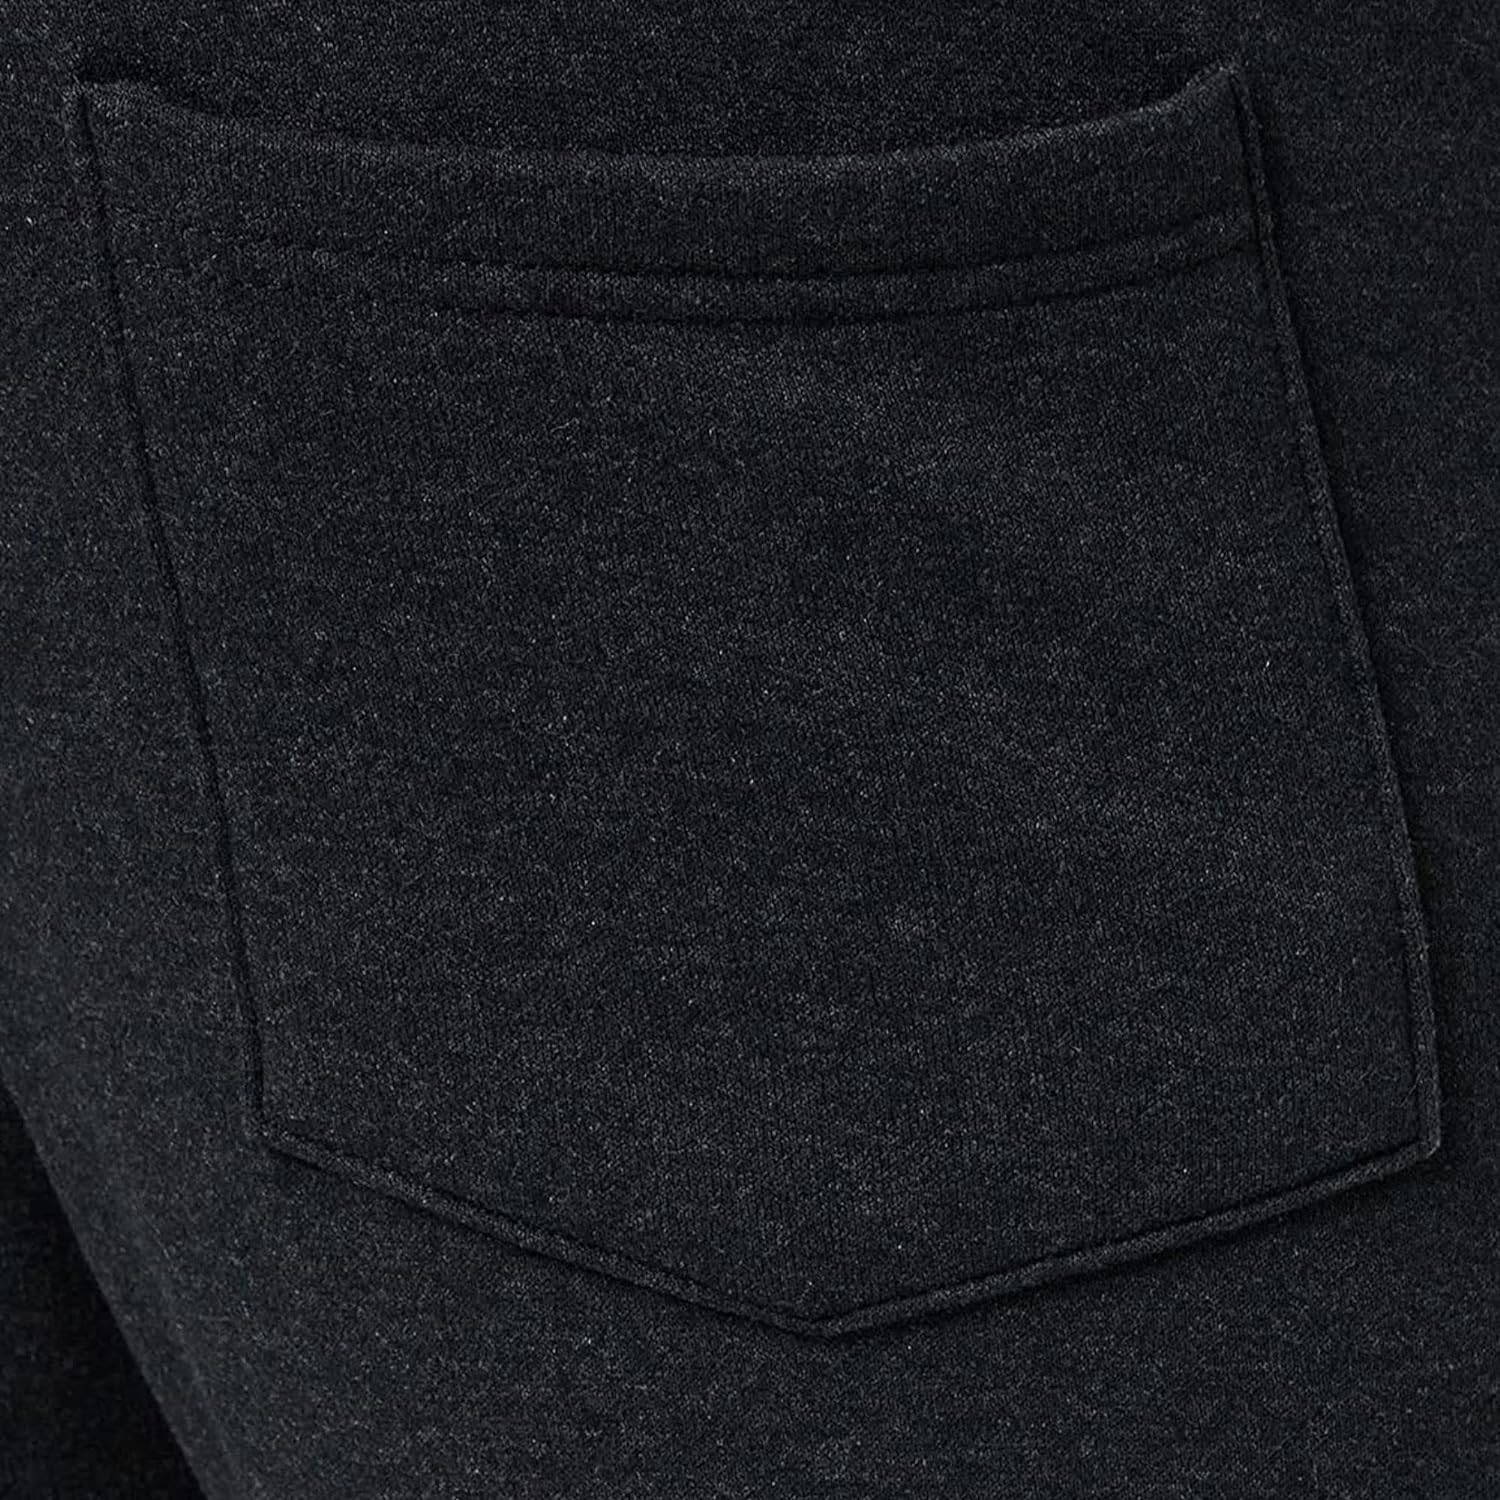 FM London Slim - Pantalon de jogging coupe ajustée pour hommes à poches zippées, - fitnessterapy